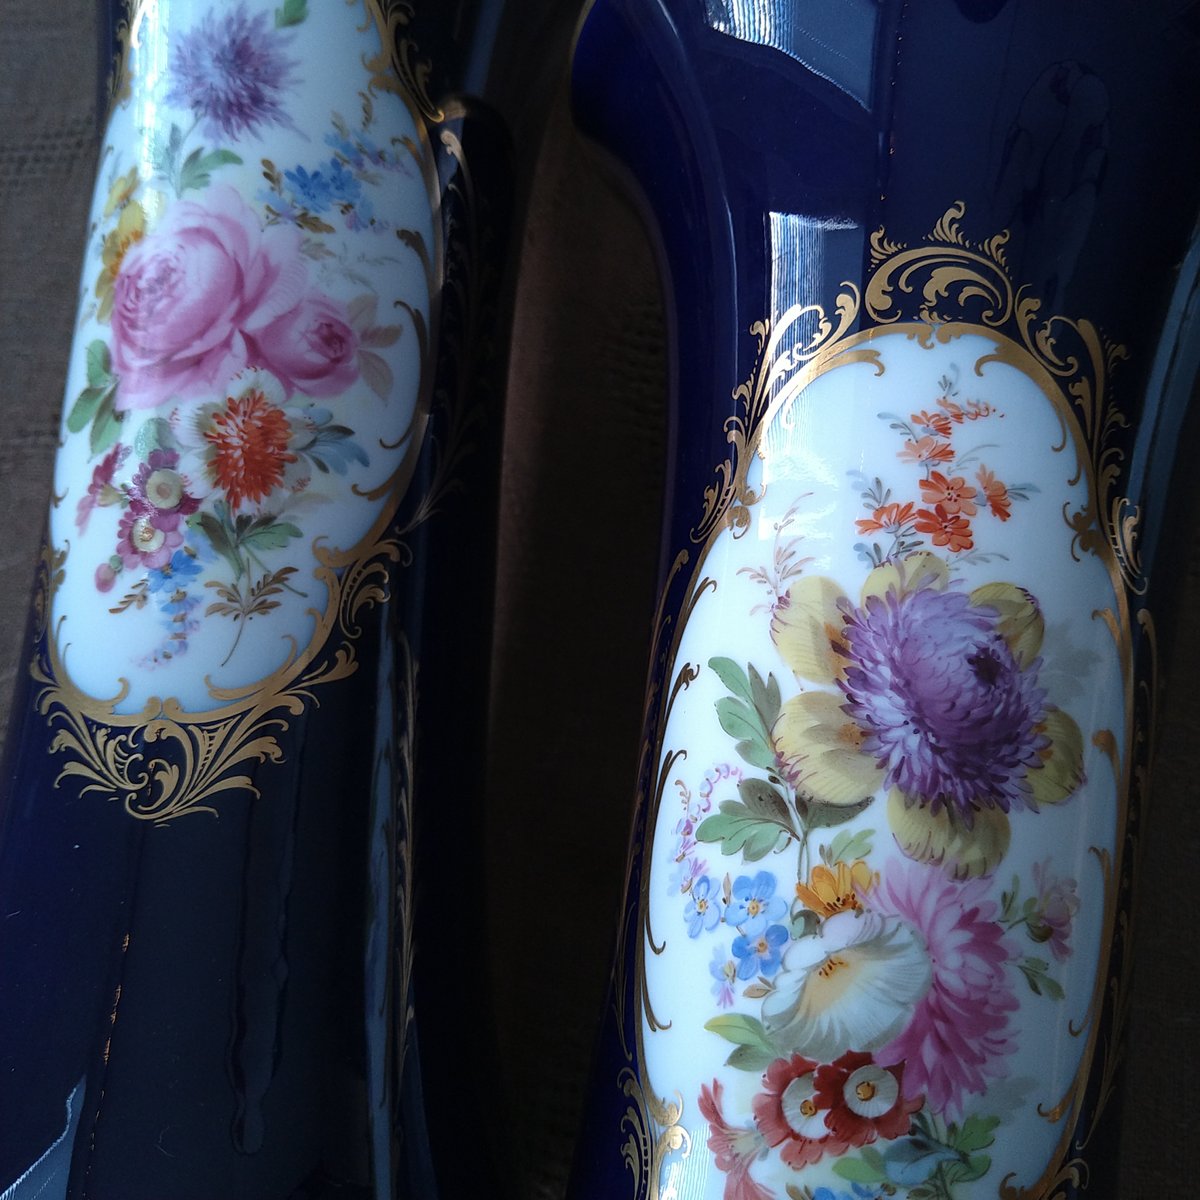 Meissenマイセン1924年以前のコバルト/2面にドイツフラワーの花瓶Vase 